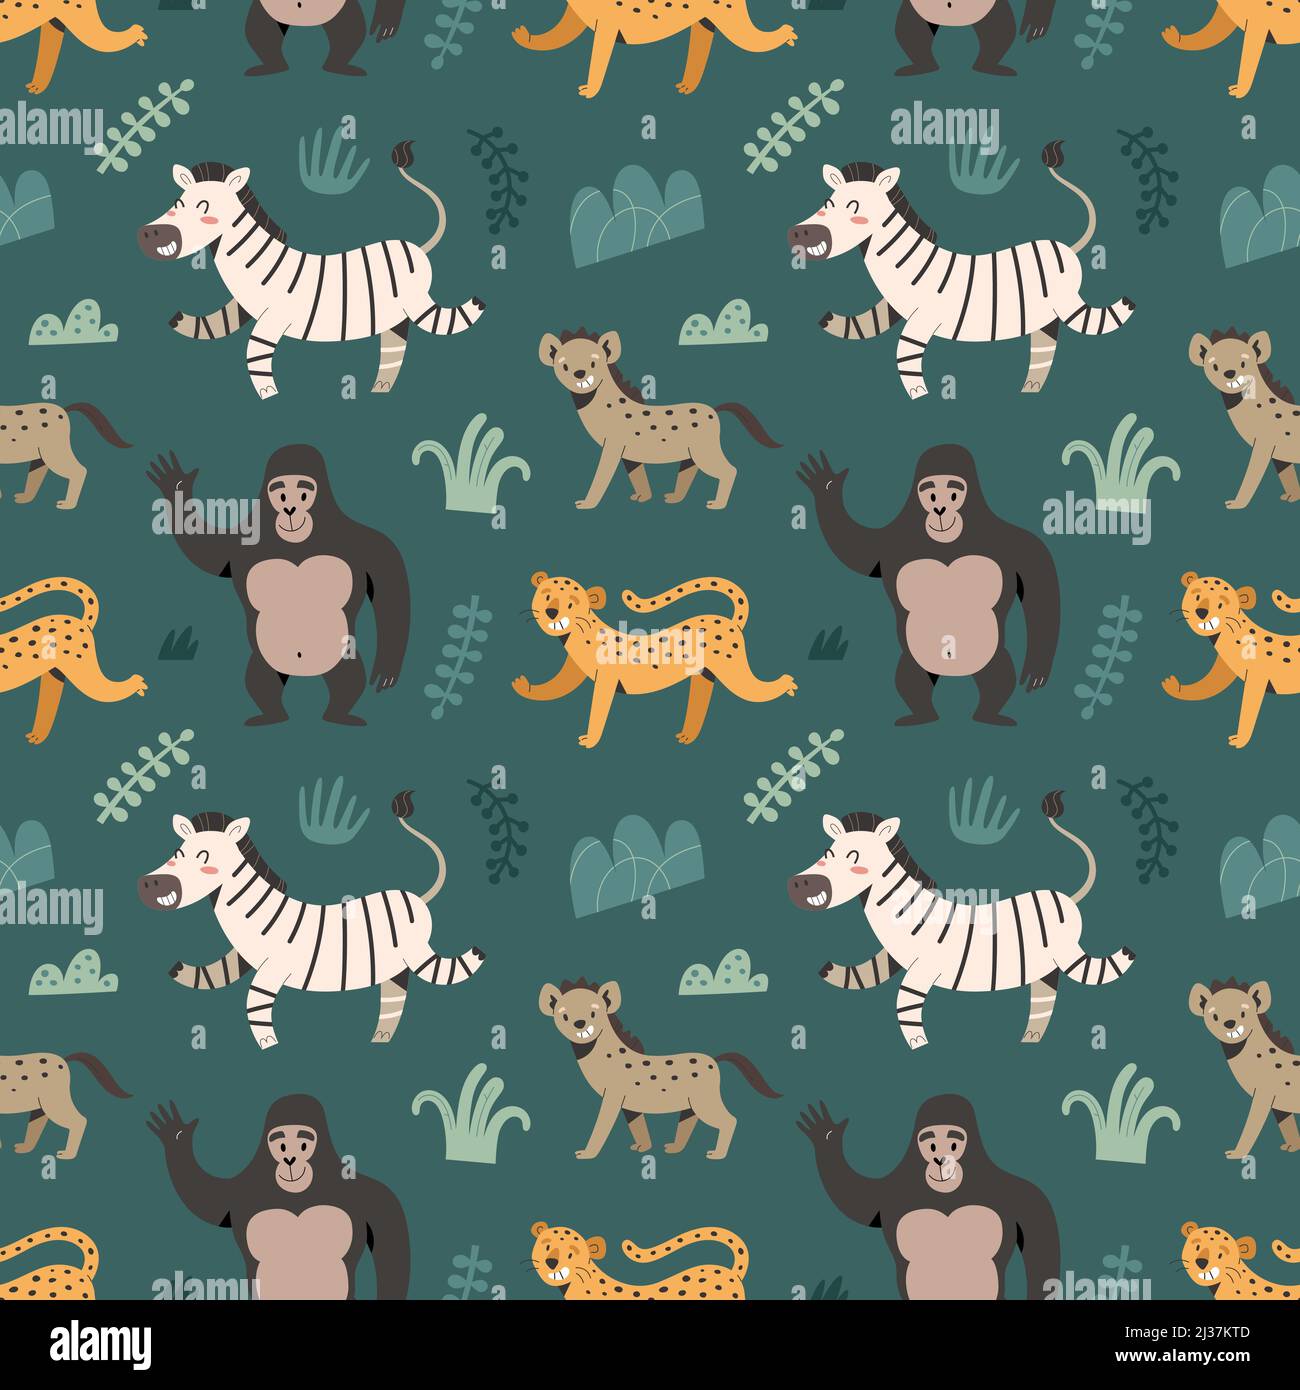 Afrikanisches Tiermuster, Zebra- und jaguar-Illustrationen, Cartoon-exotische Tiere, trendiger Zoodruck für Kinder, Safari-Säugetiere, textiles Ornament Stock Vektor